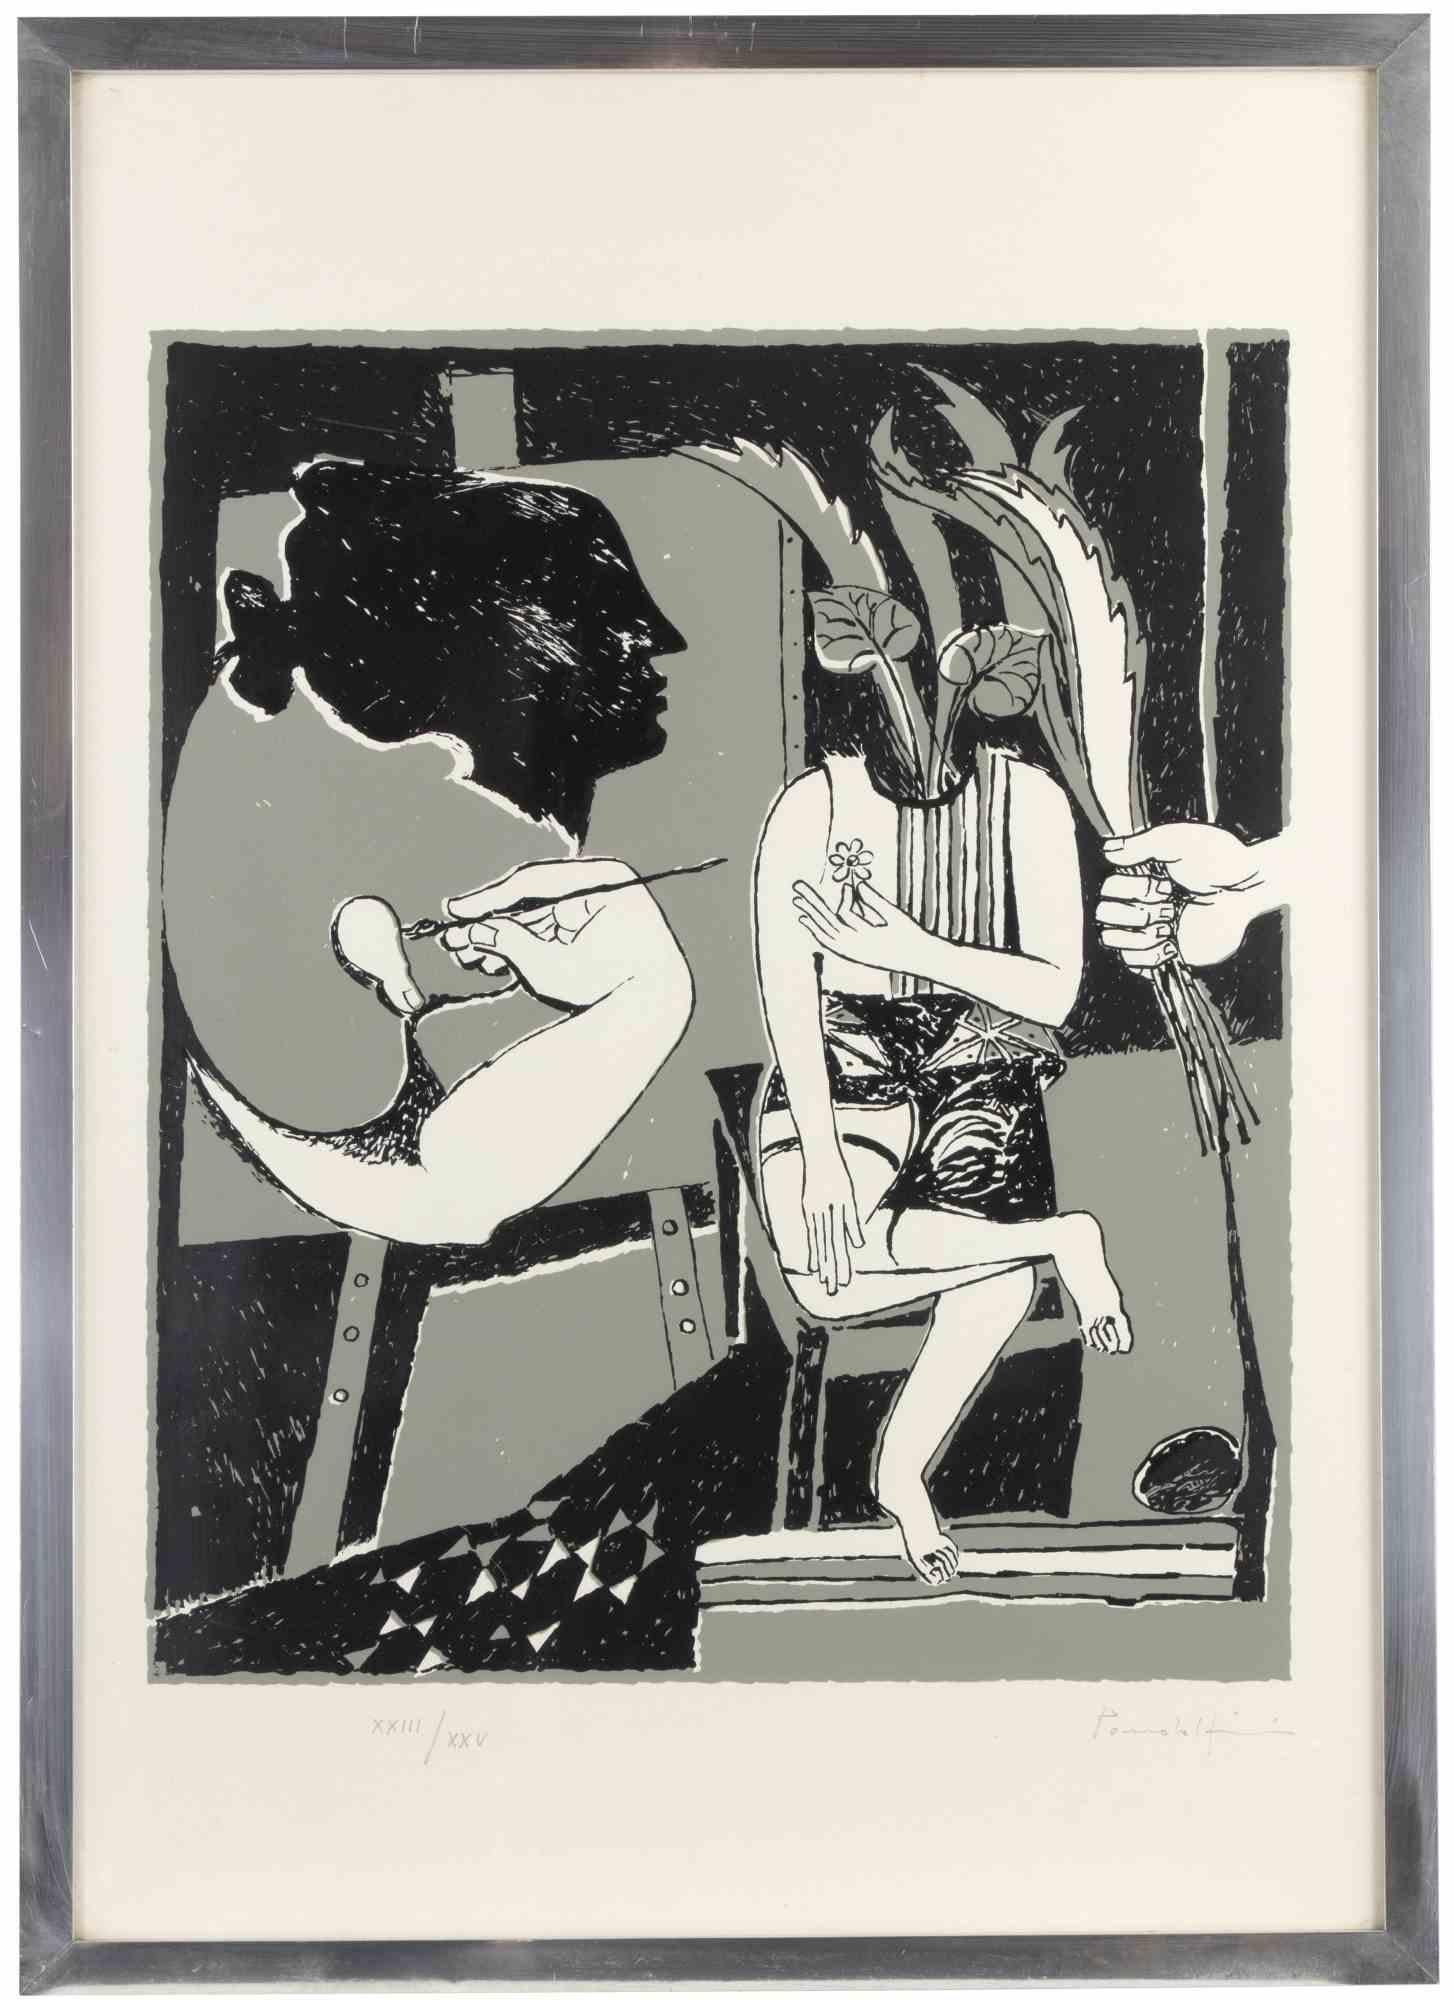 Figures ist ein zeitgenössisches Kunstwerk von Emanuele Pandolfini aus den 1970er Jahren.

Lithographie auf Papier.

Am unteren Rand handsigniert und nummeriert.

Ausgabe von XXIII/XXV

Inklusive Rahmen